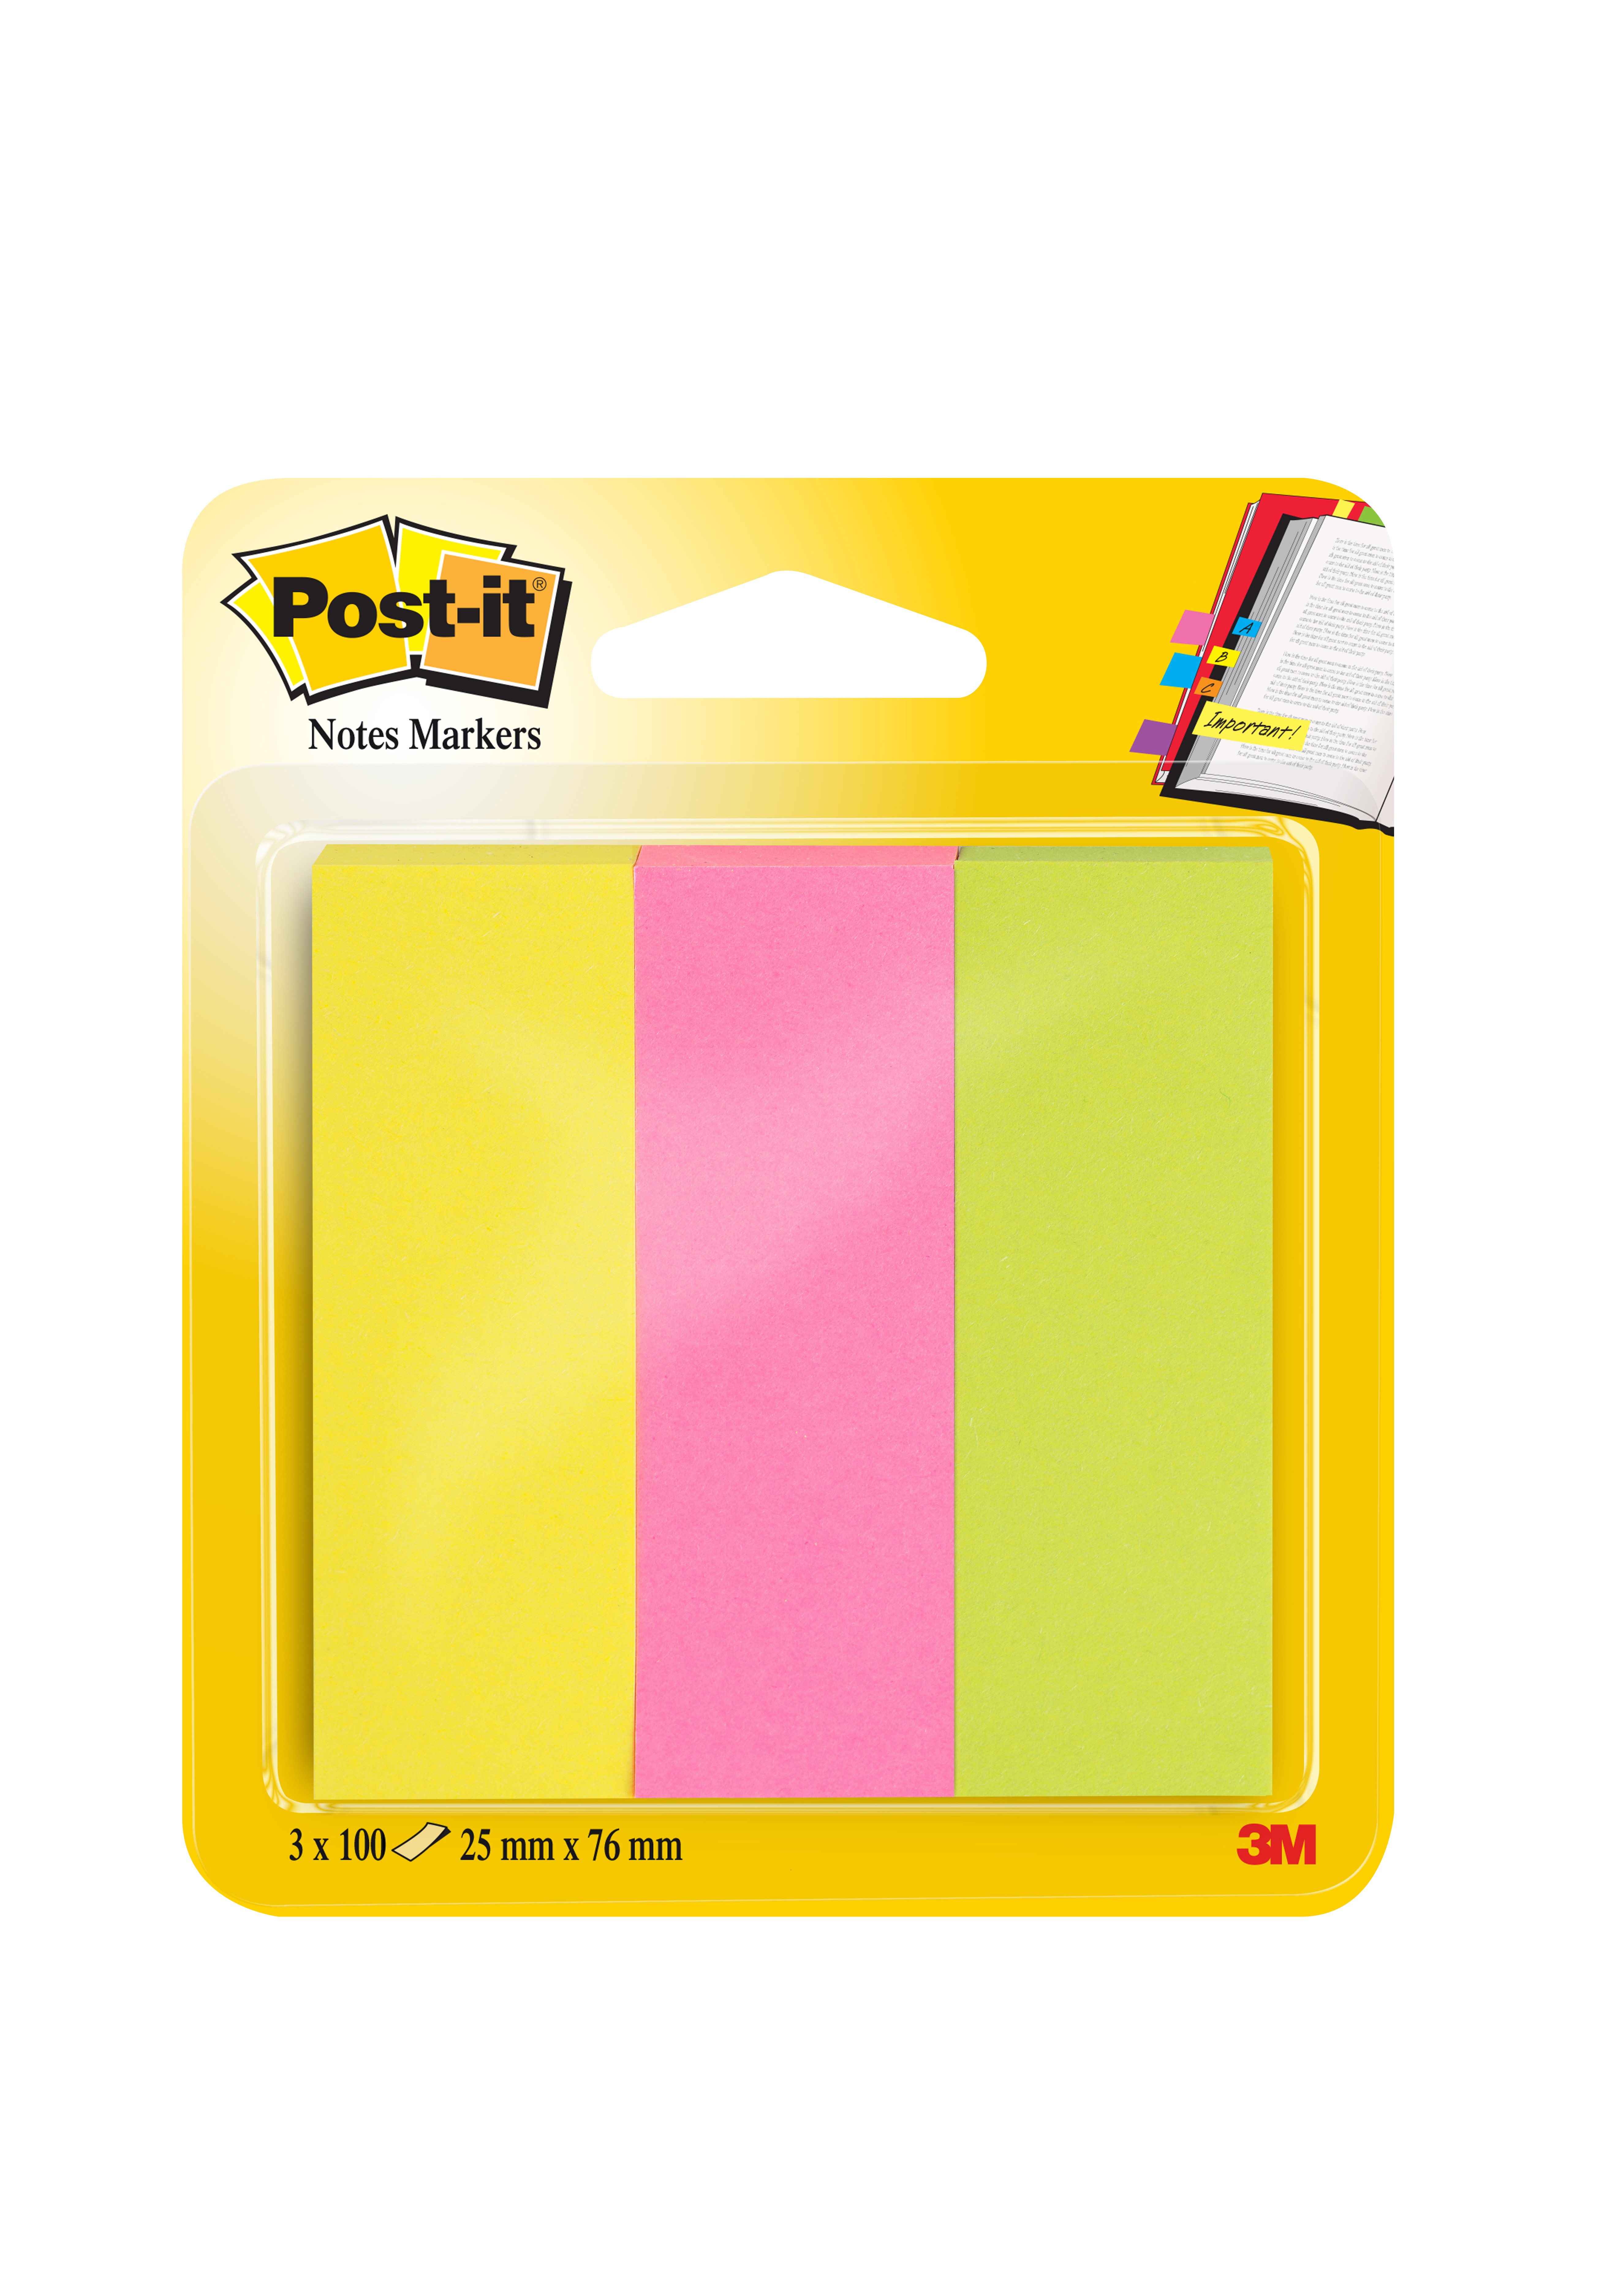 Märkflik Post-it Notes gul, rosa, grön 25x76mm 10110086_1